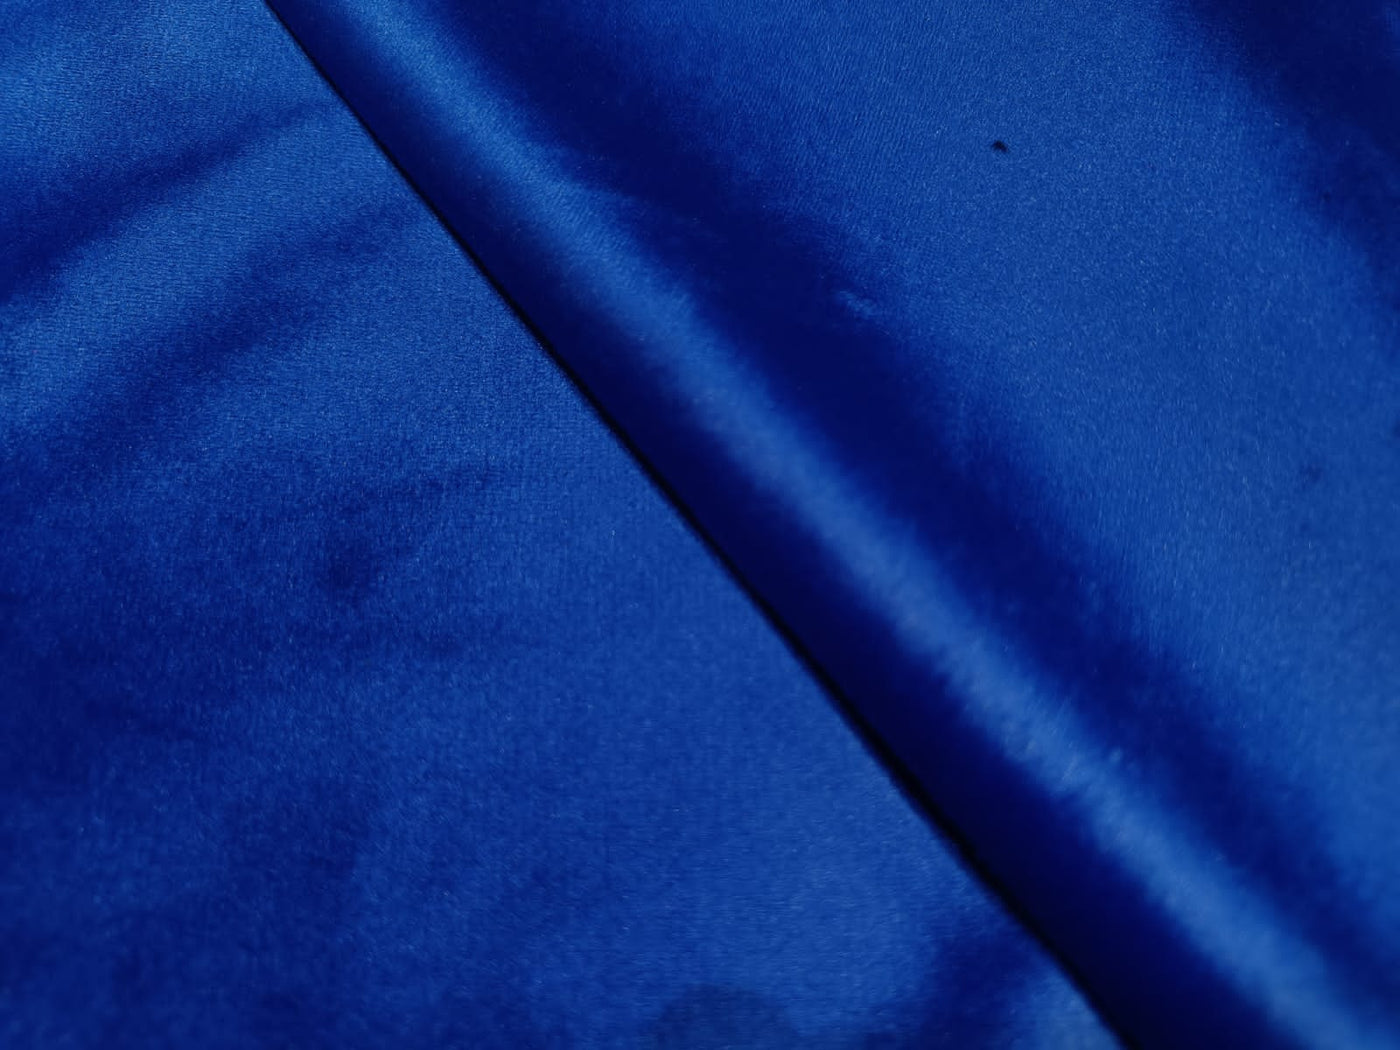 VELVET Lycra royal blue Fabric 58" wide[12109]